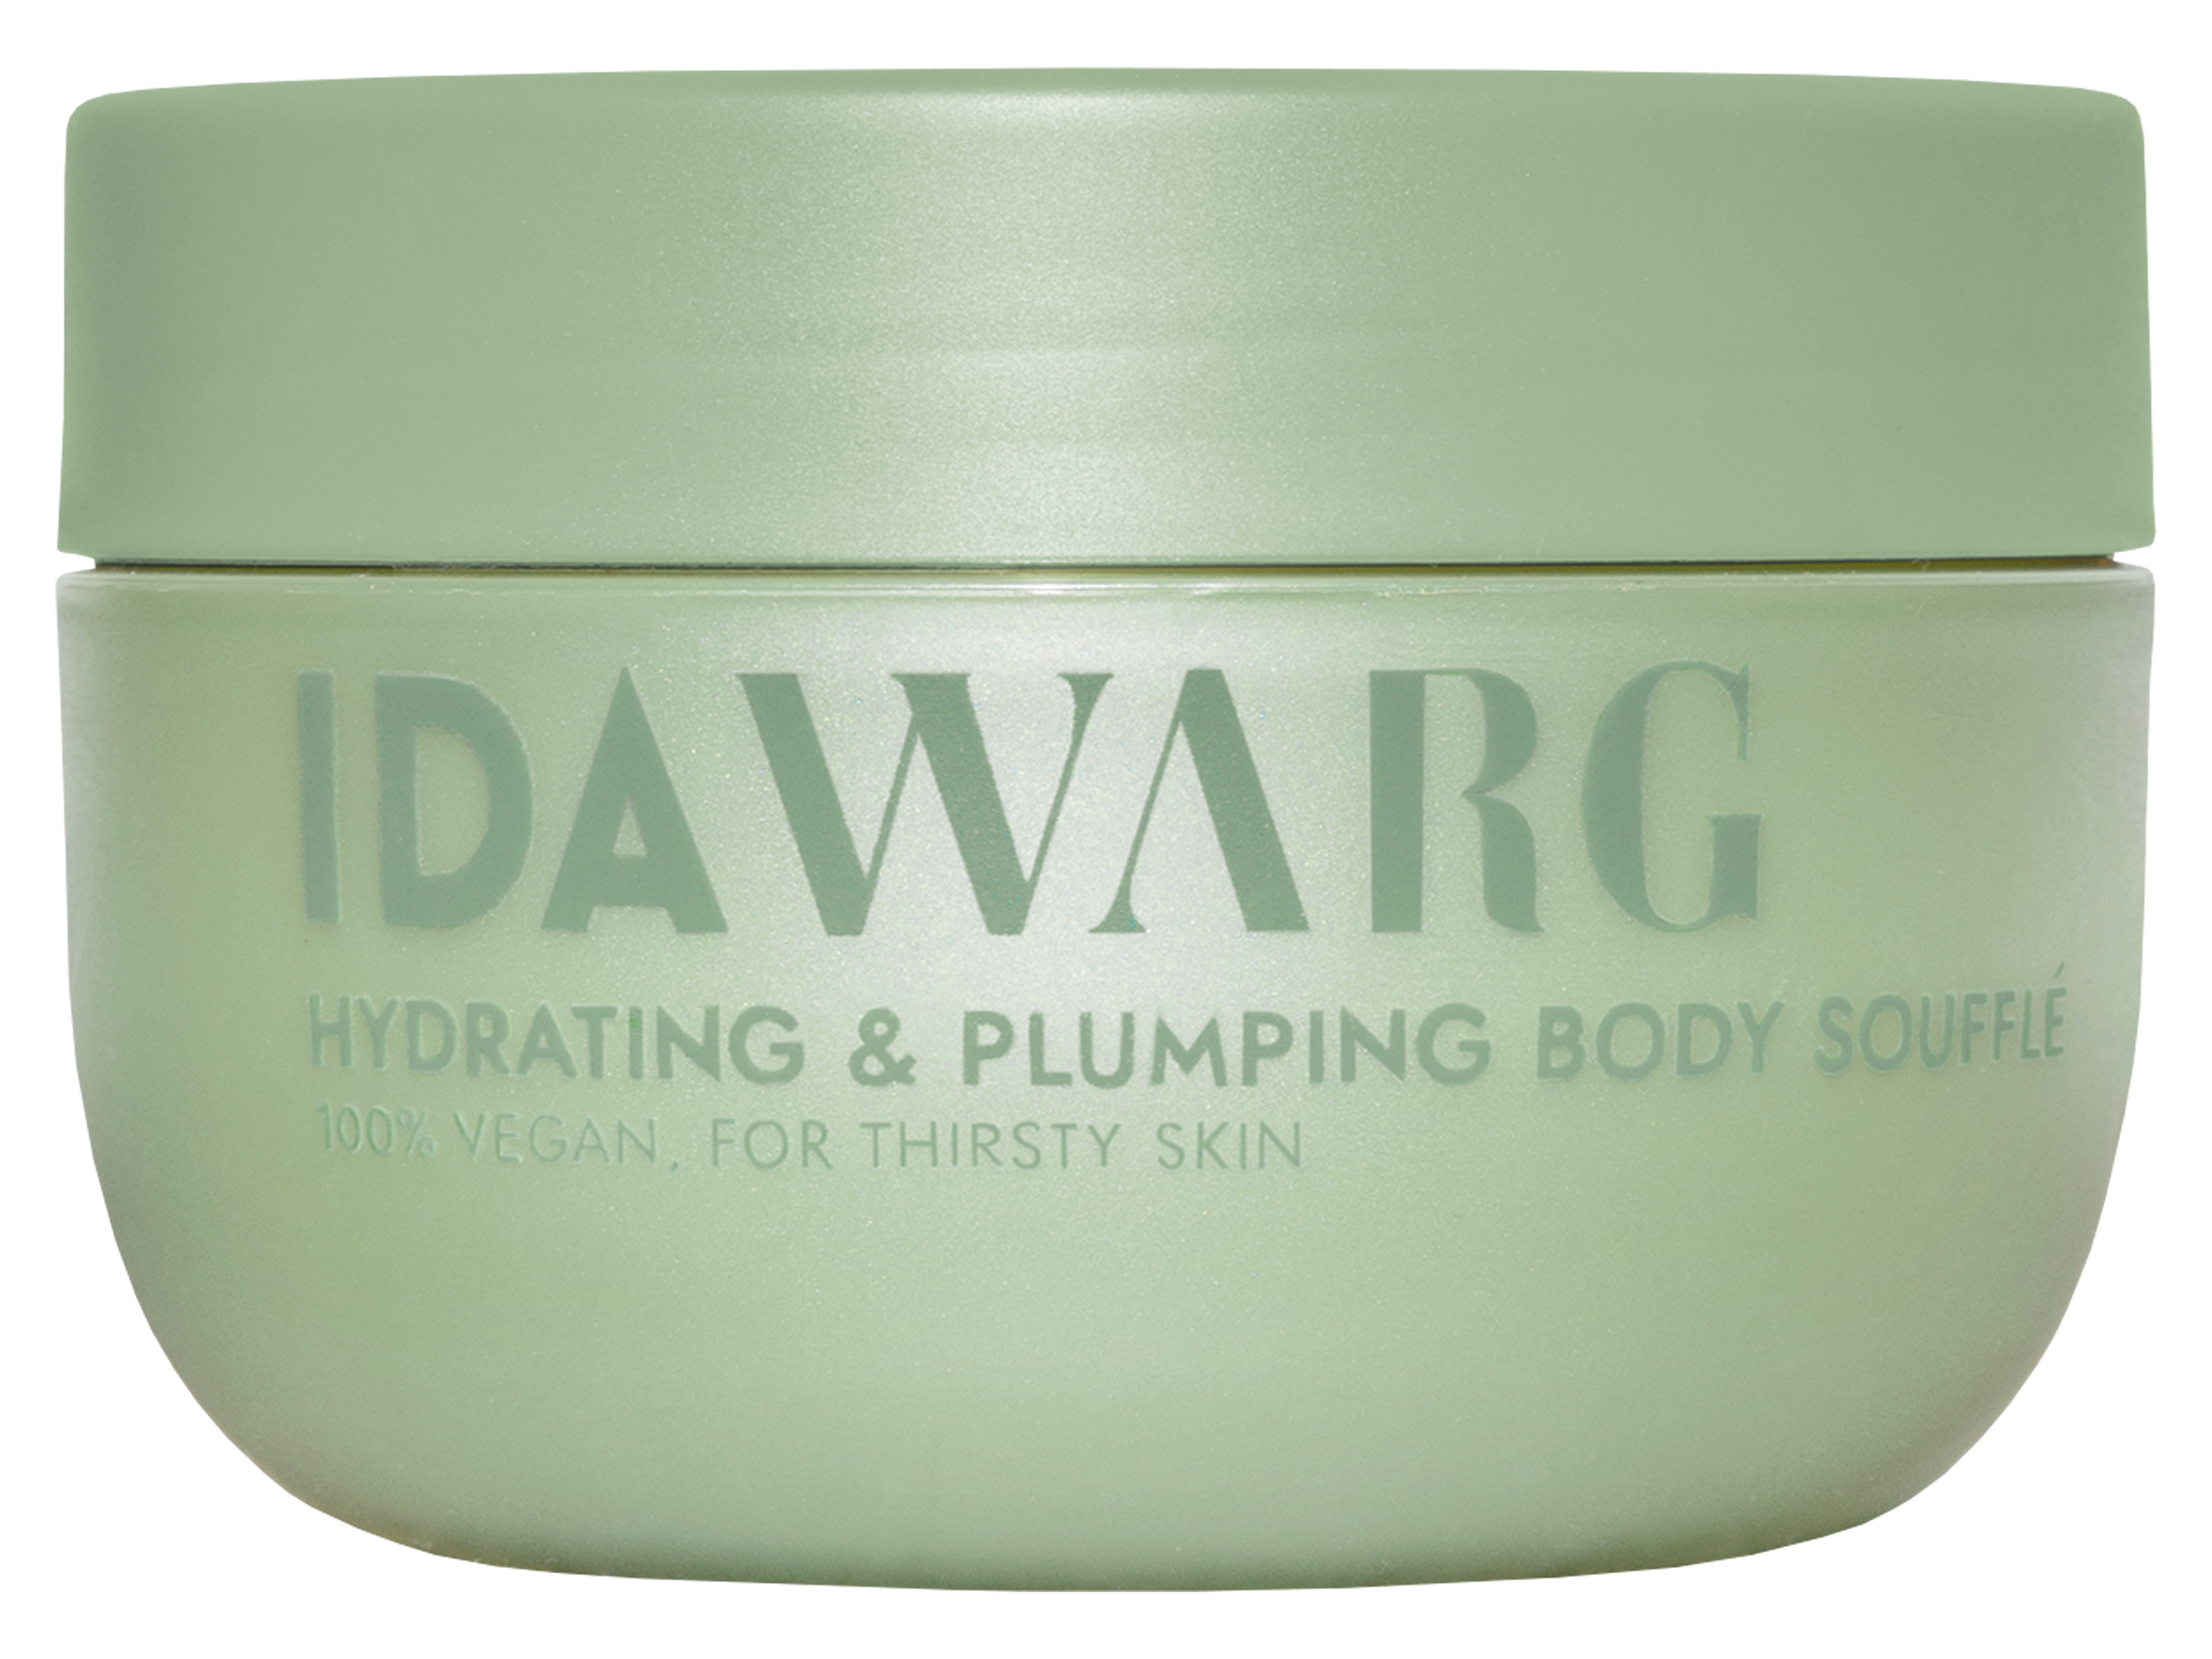 Ida Warg Beauty Hydrating & Plumping Body Soufflé, 250 ml